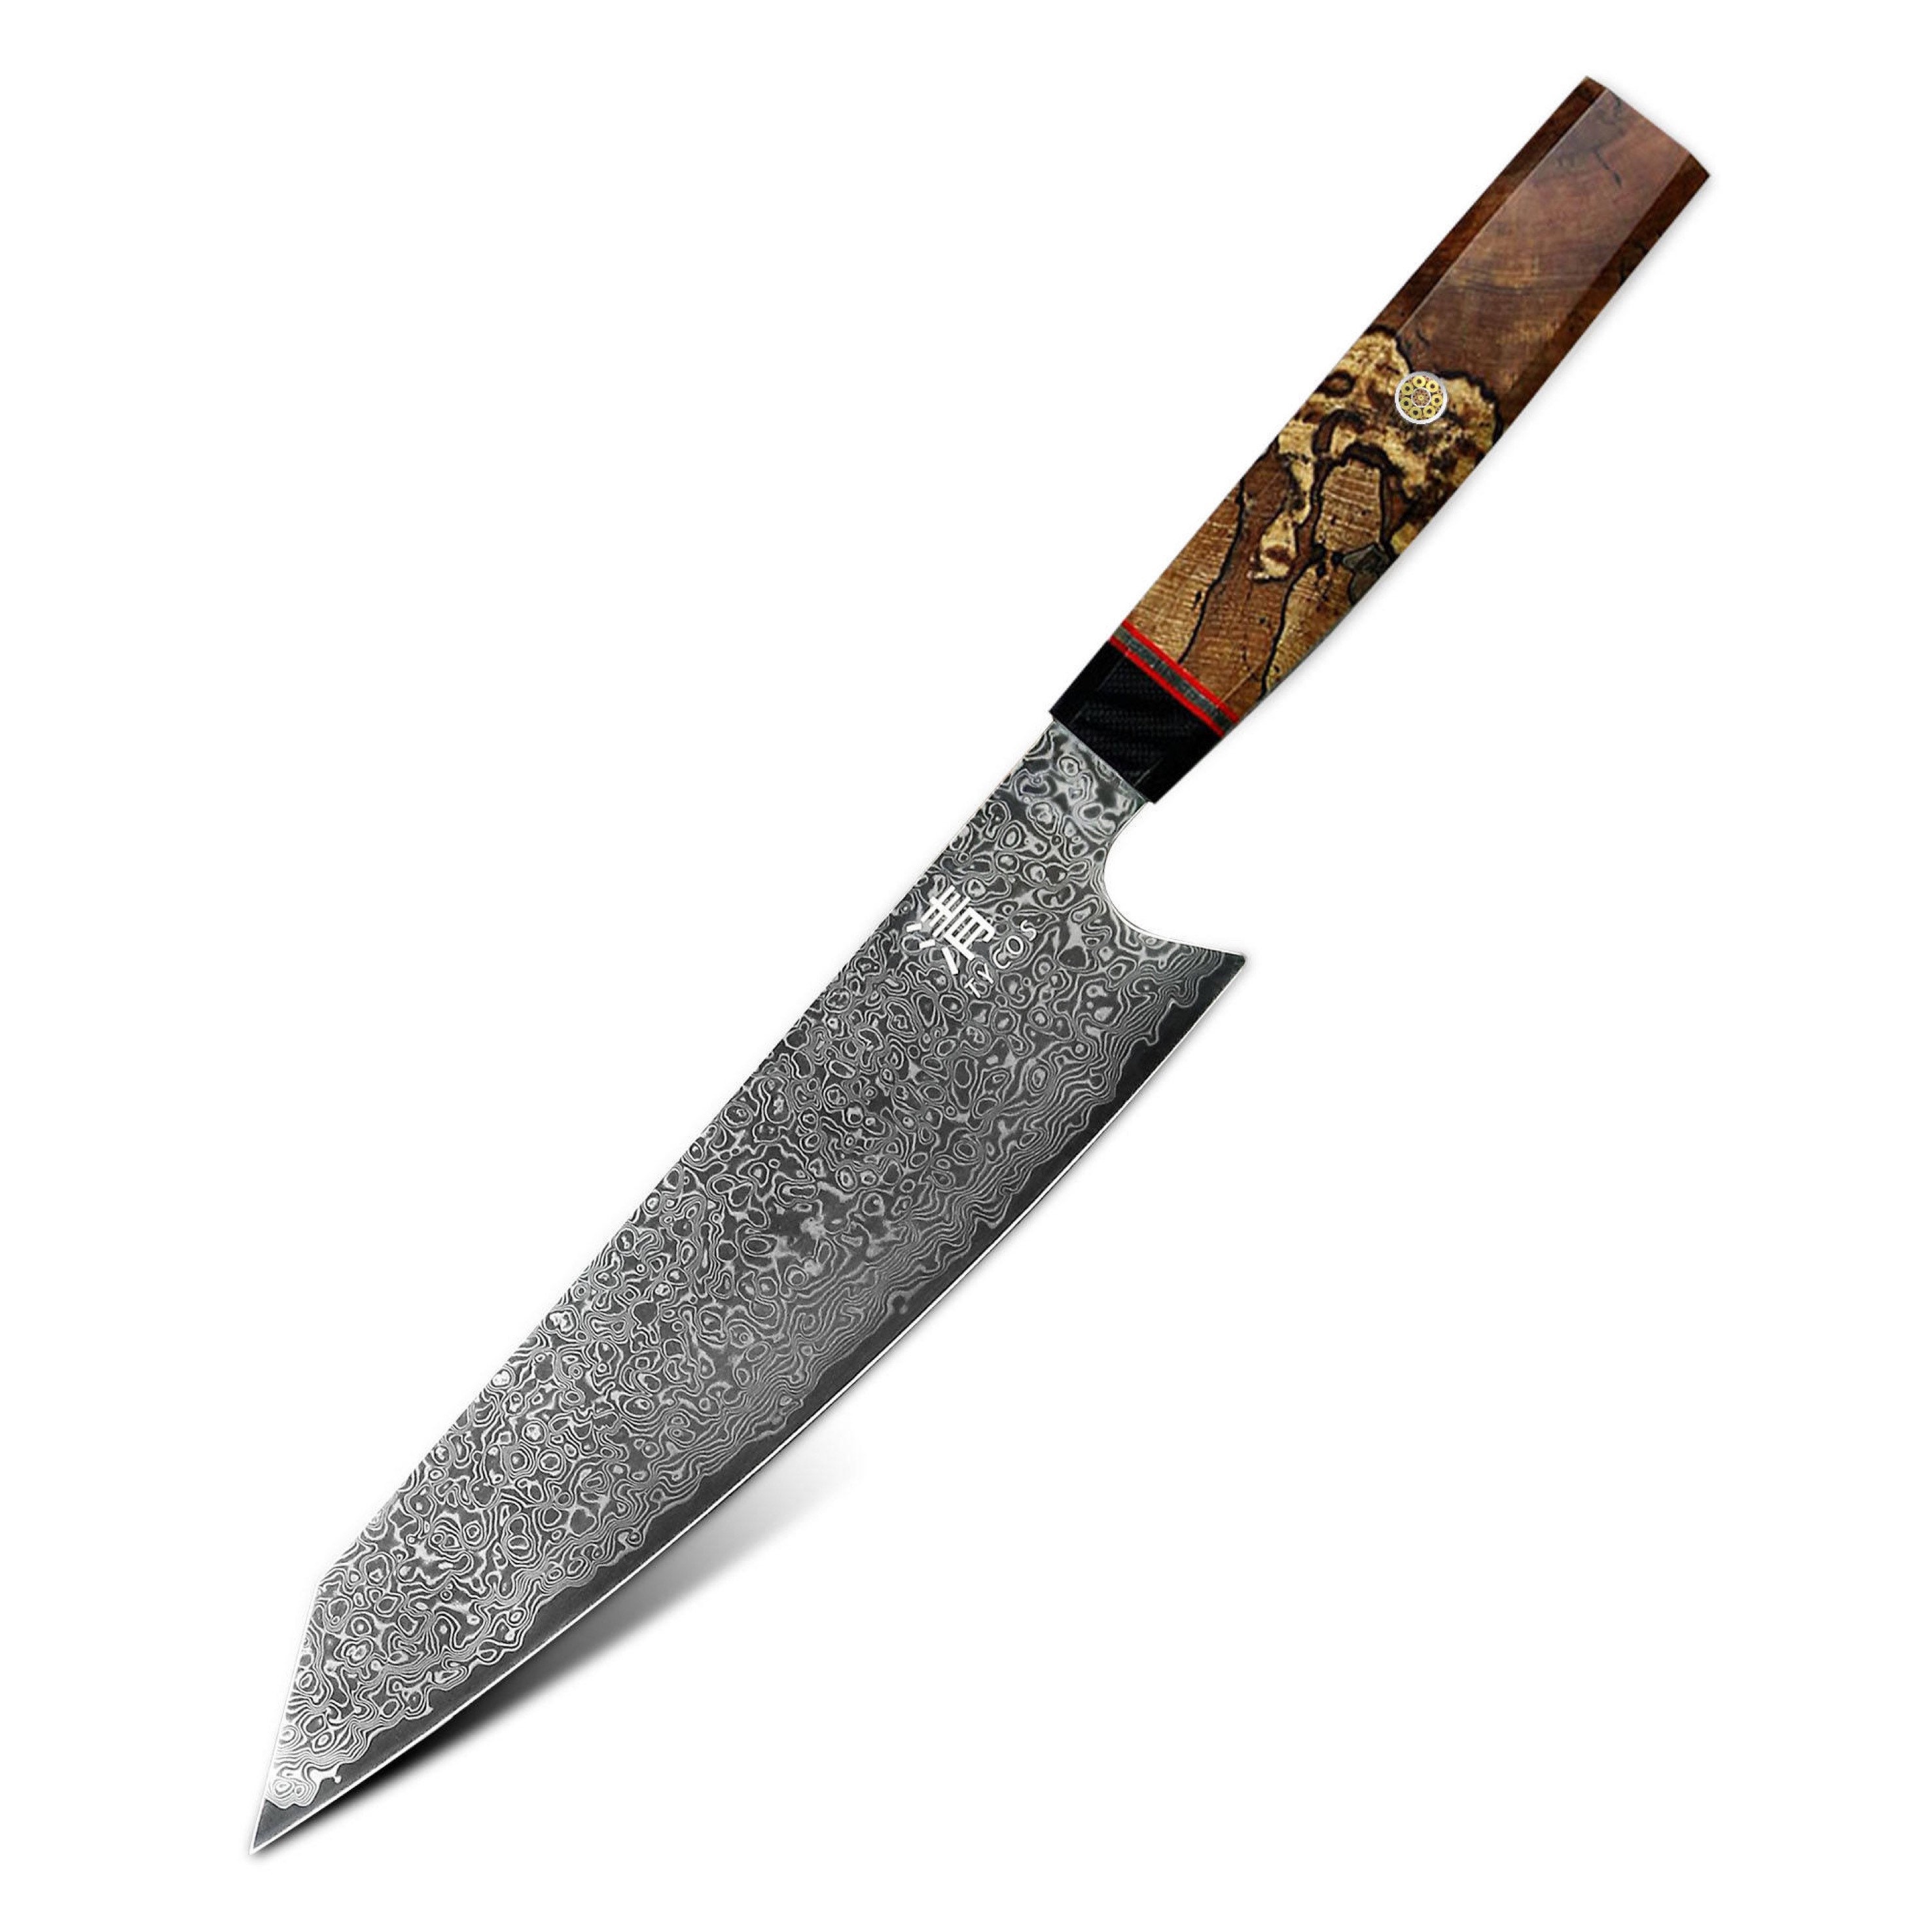 couteau de chef damas | couteau japonais kiritsuke 8 pouces vg10 67 couches, manche en bois cadeau pour maman, papa, petit ami, petite amie, |